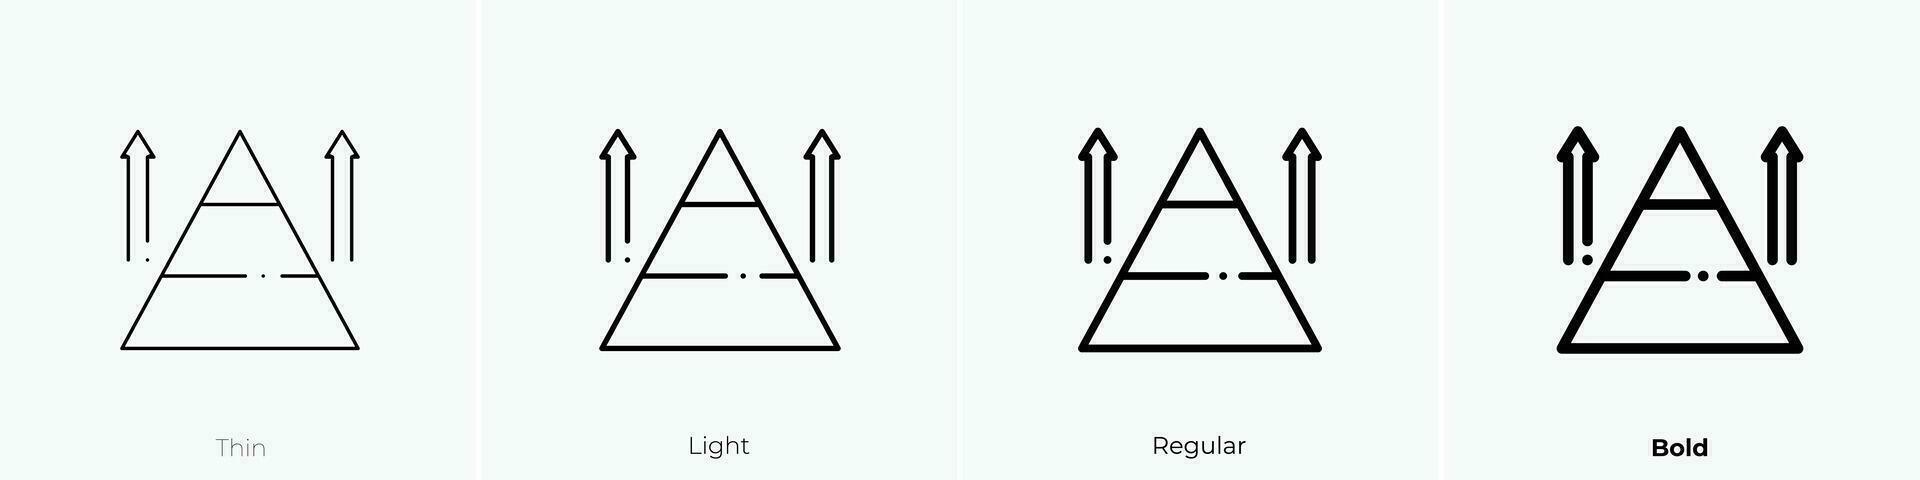 pirámide icono. delgado, luz, regular y negrita estilo diseño aislado en blanco antecedentes vector